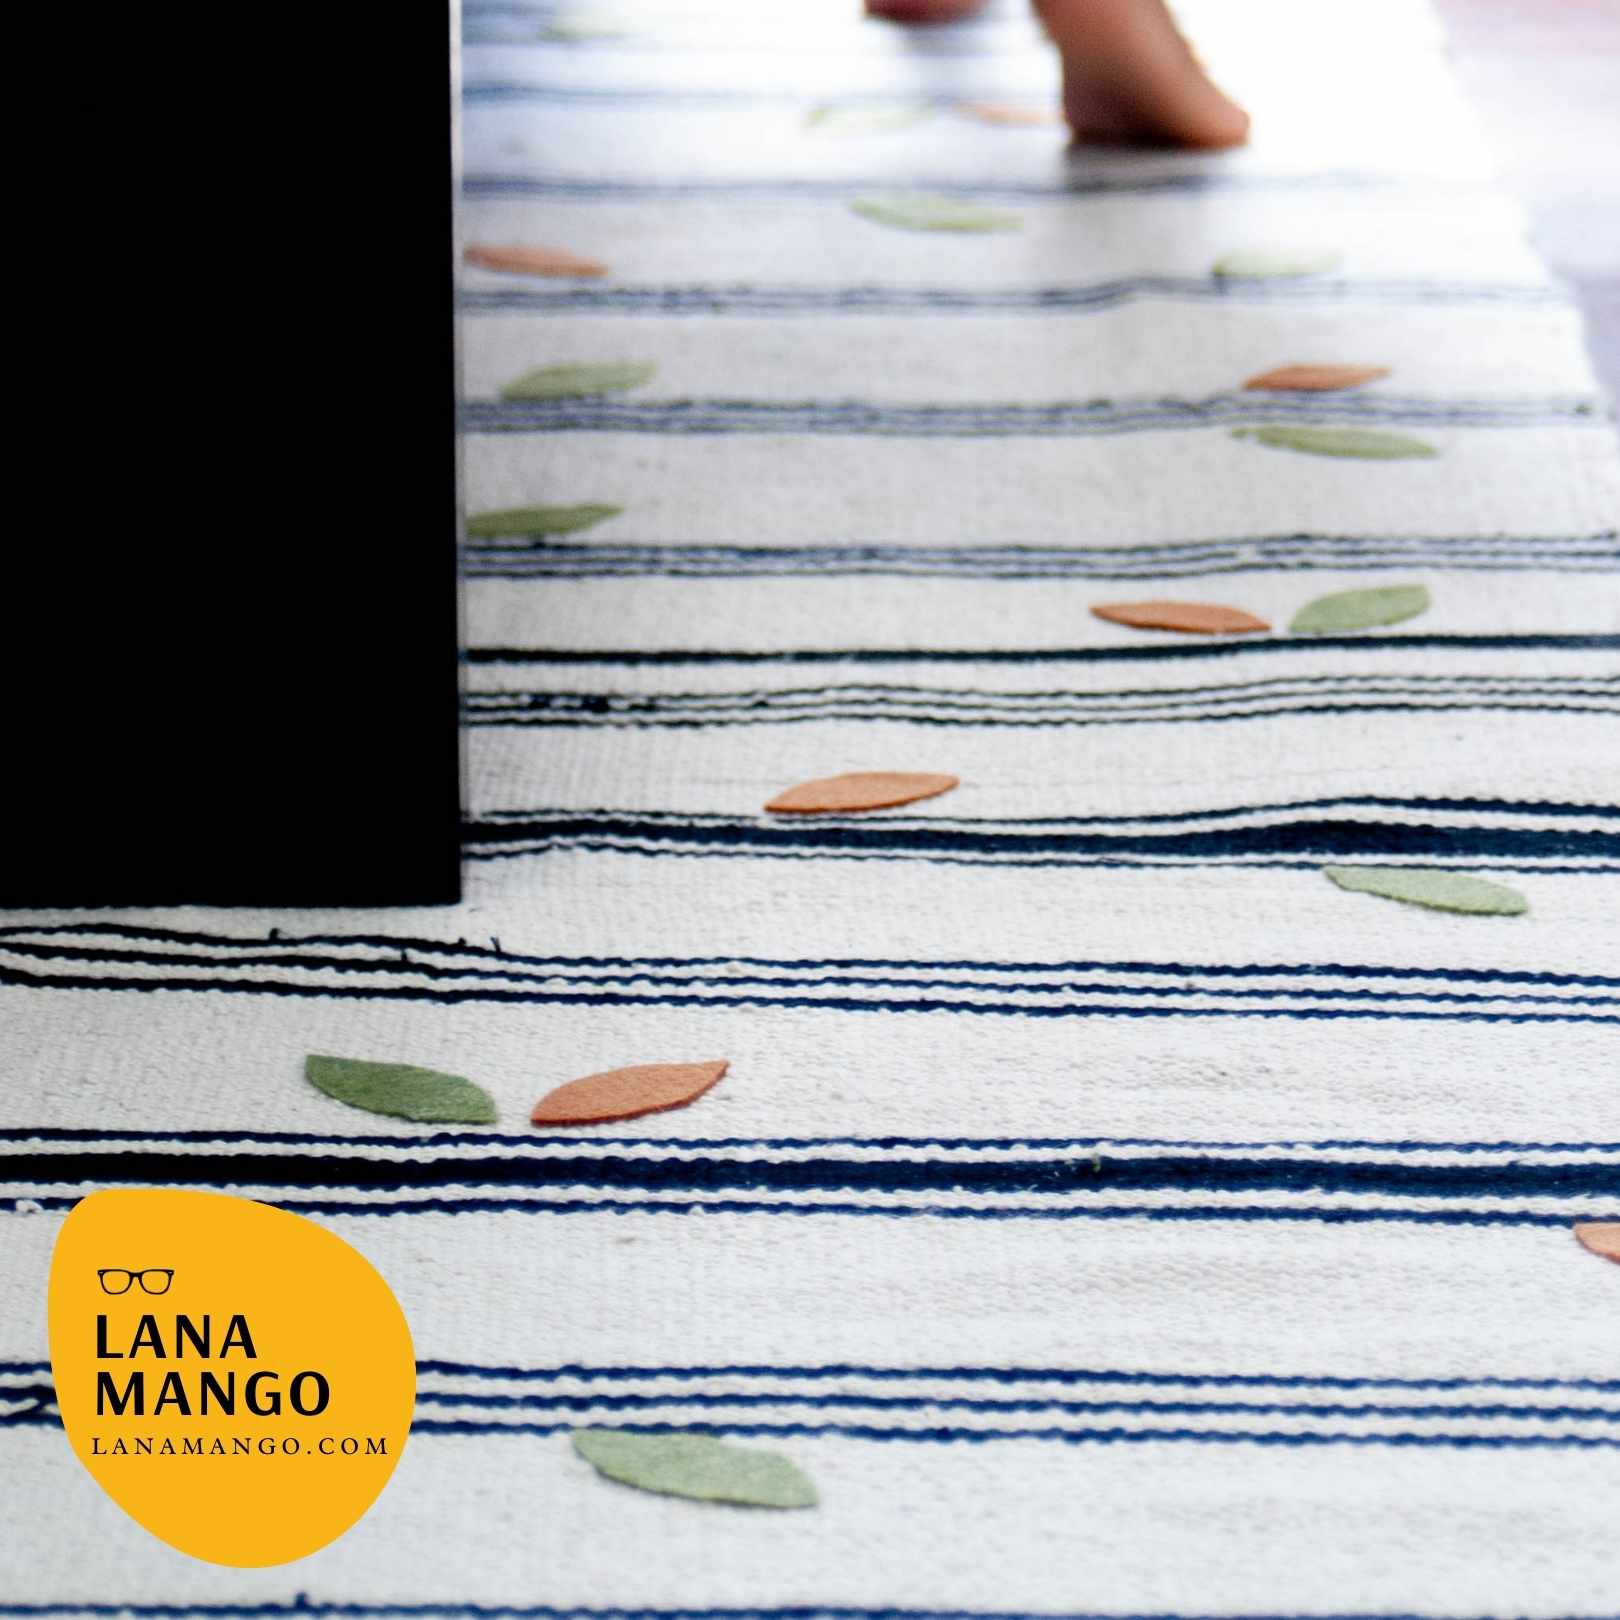 Alfombra de ikea fácil – haz una bonita alfonbra de pasillo a la medida cosiendo alfombras pequeñas de ikea